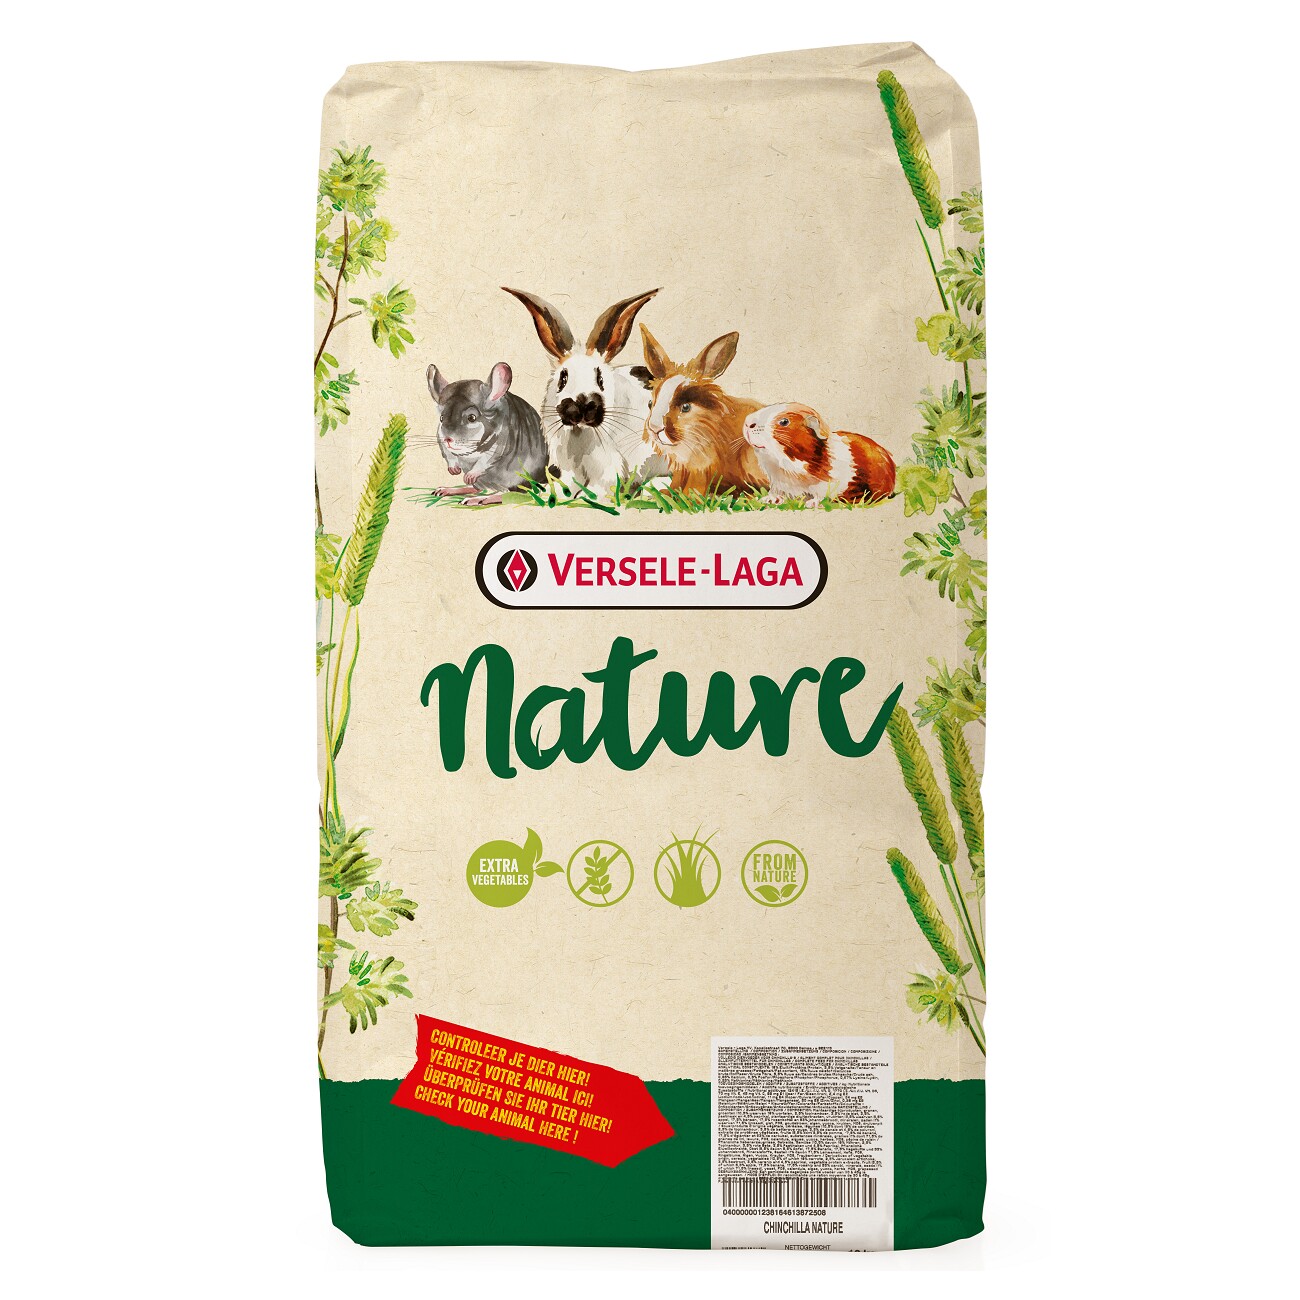 Promo Alimentation Versele-Laga Pour lapin cuni - 2,3 kg (1 kg = 3,91 € au  lieu de 4,34 €). Existe pour cochon d'inde chez Maxi Zoo